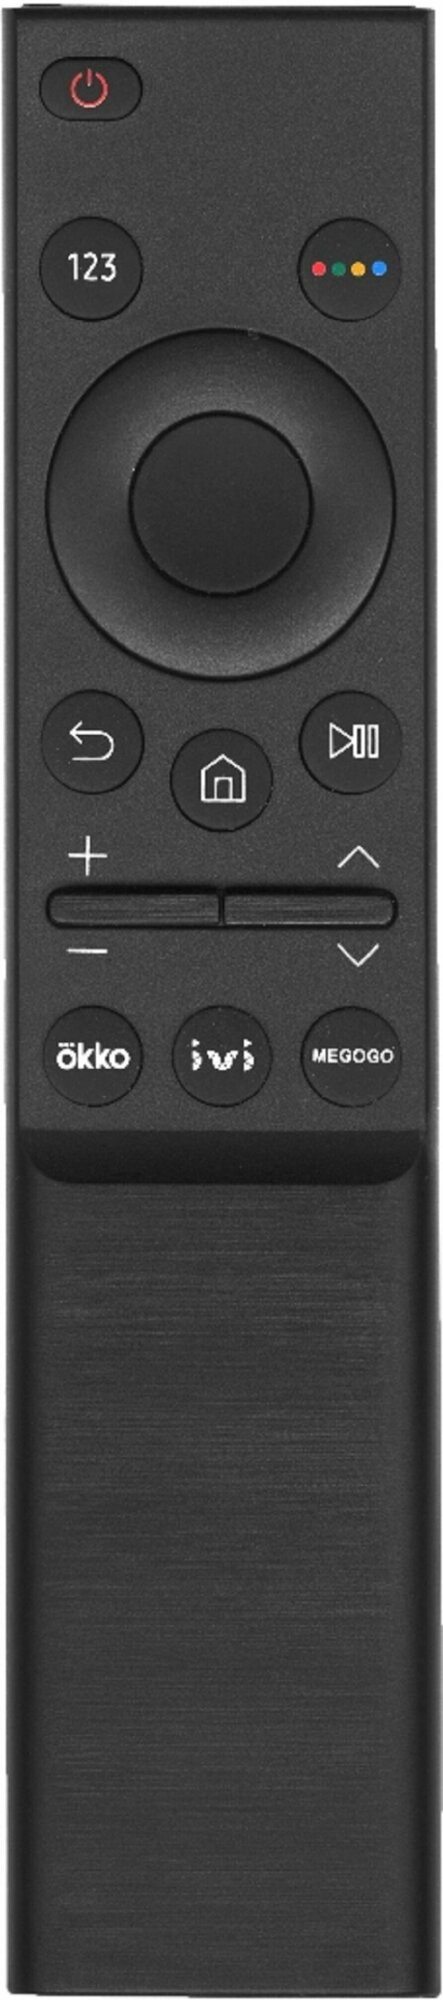 Пульт SAMSUNG BN59-01358F для Smart телевизоров 2021 года с кнопками OKKO, IVI, Megogo